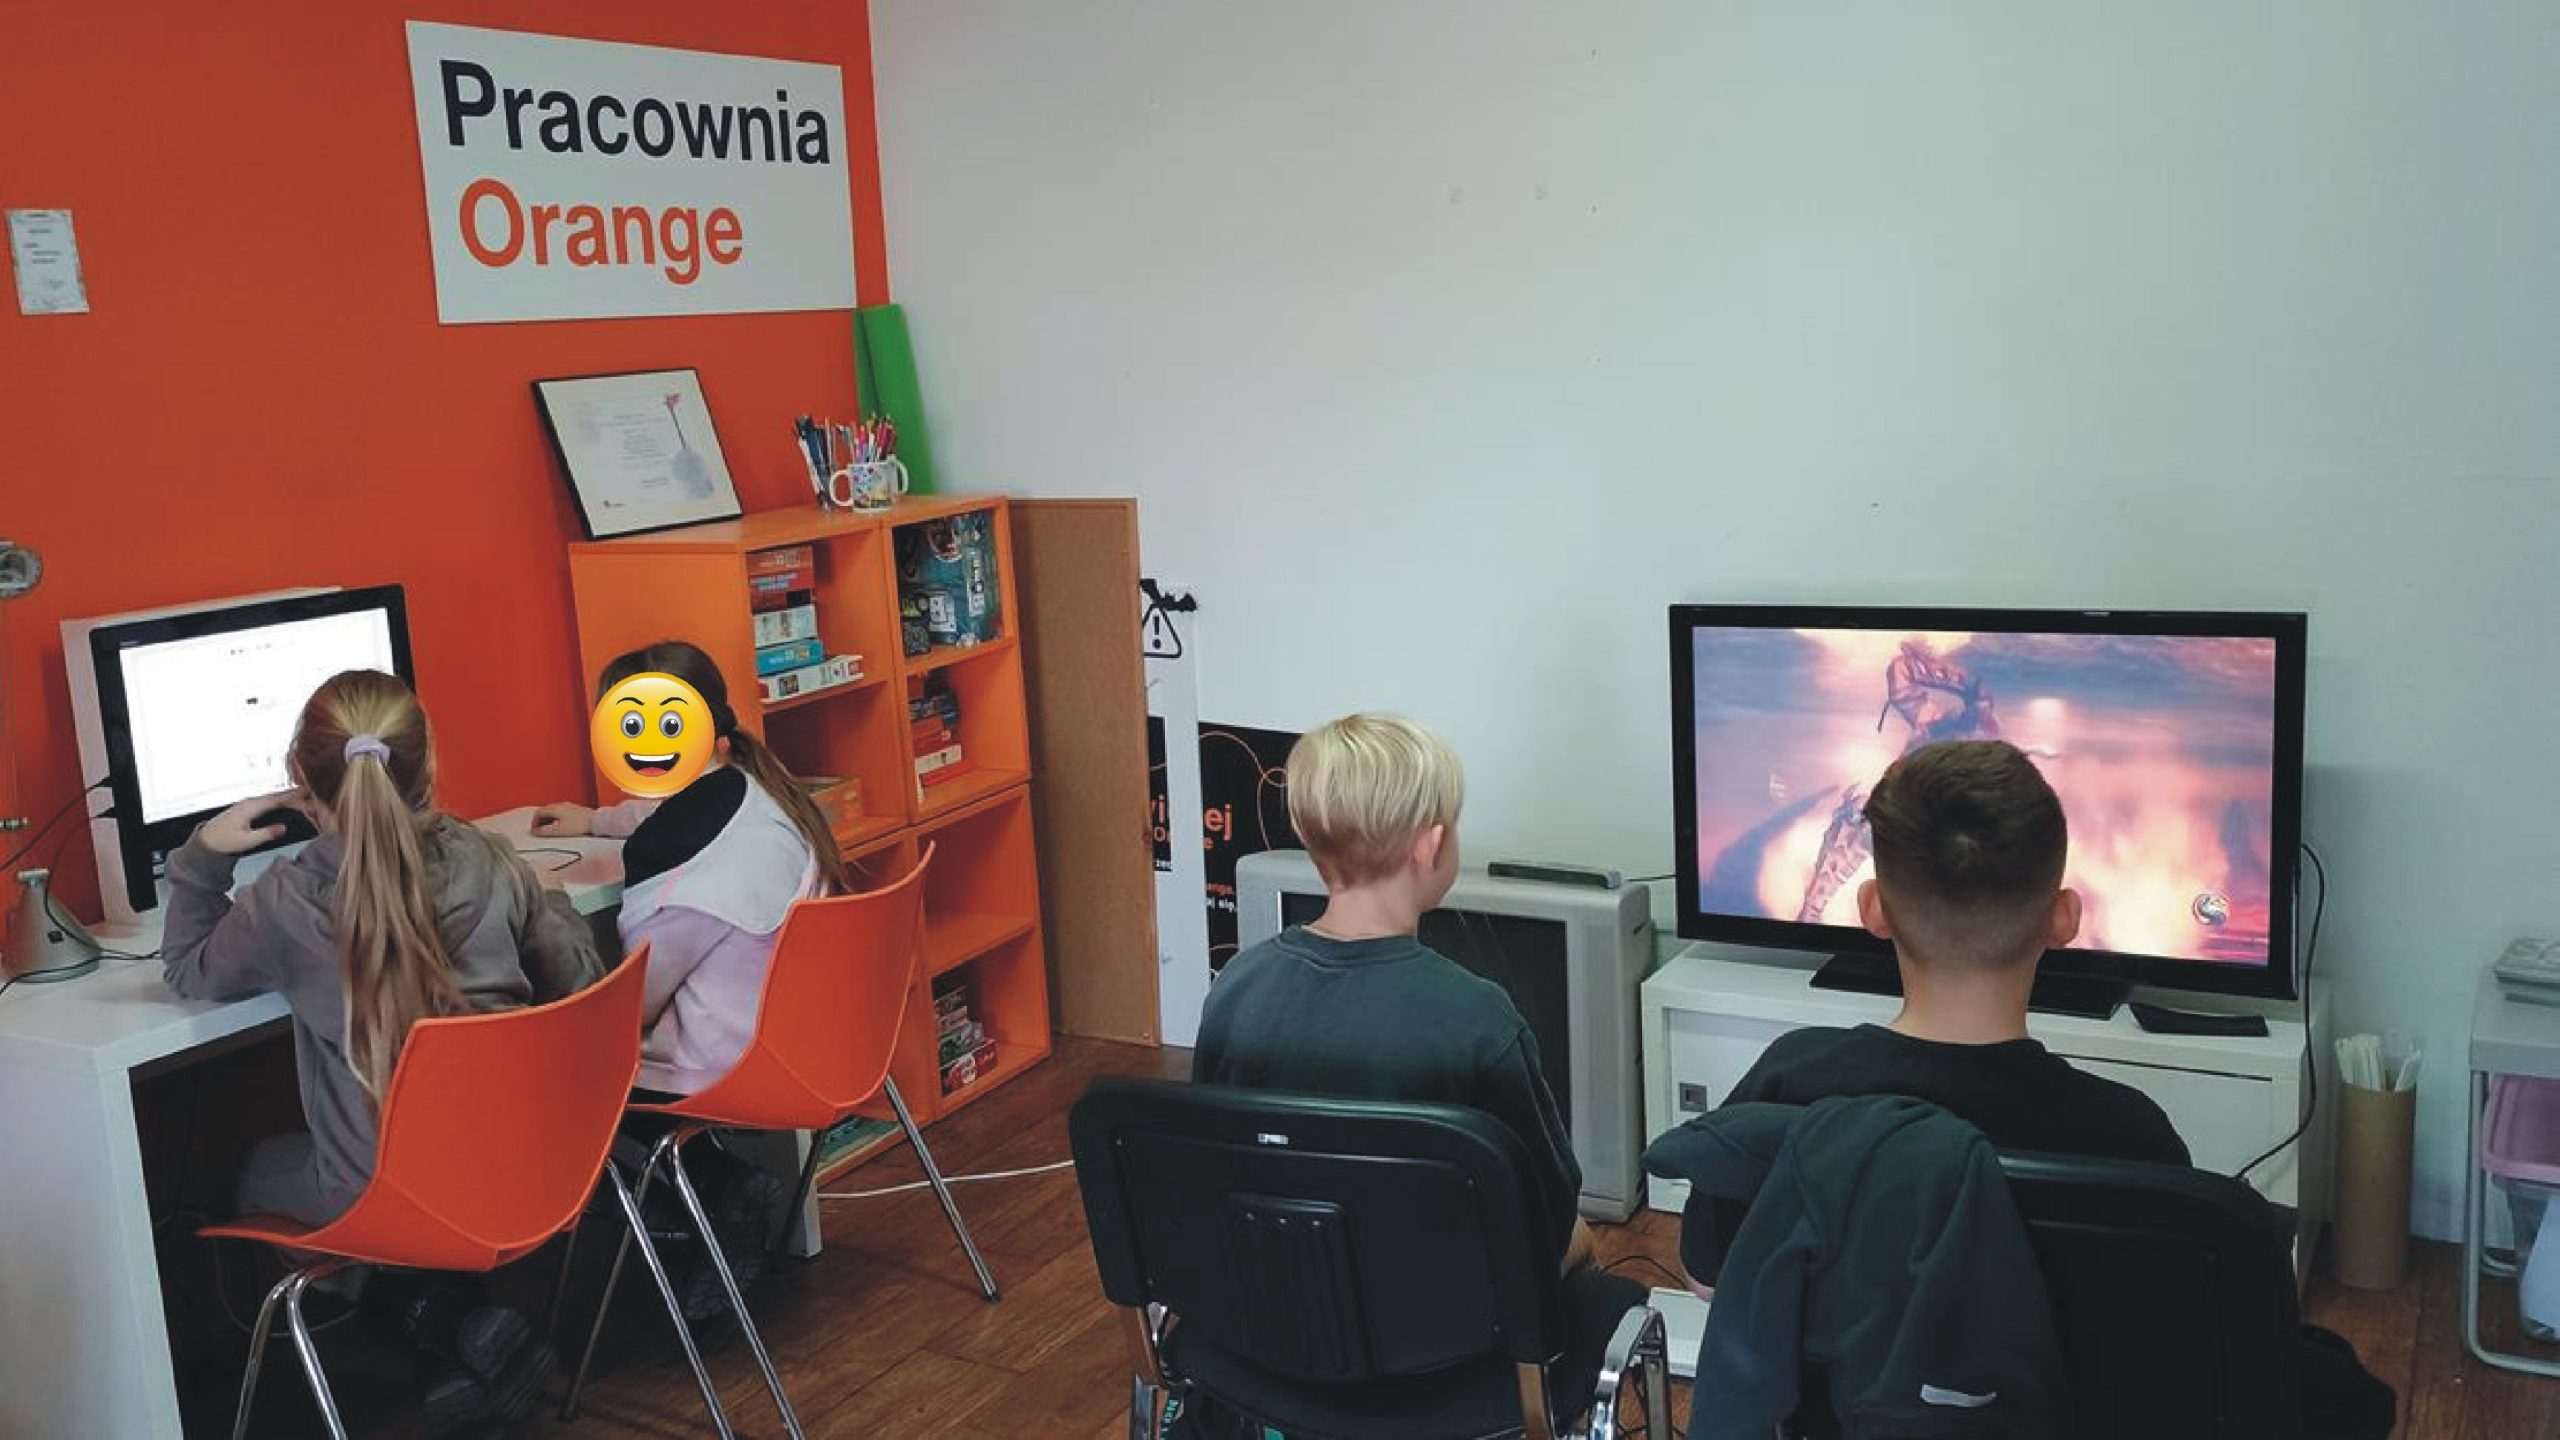 na zdjęciu z pracowni orange widać dzieci grające, oglądające coś na komputerze, dwójka chłopców ze zdjęcia gra w grę na playstation